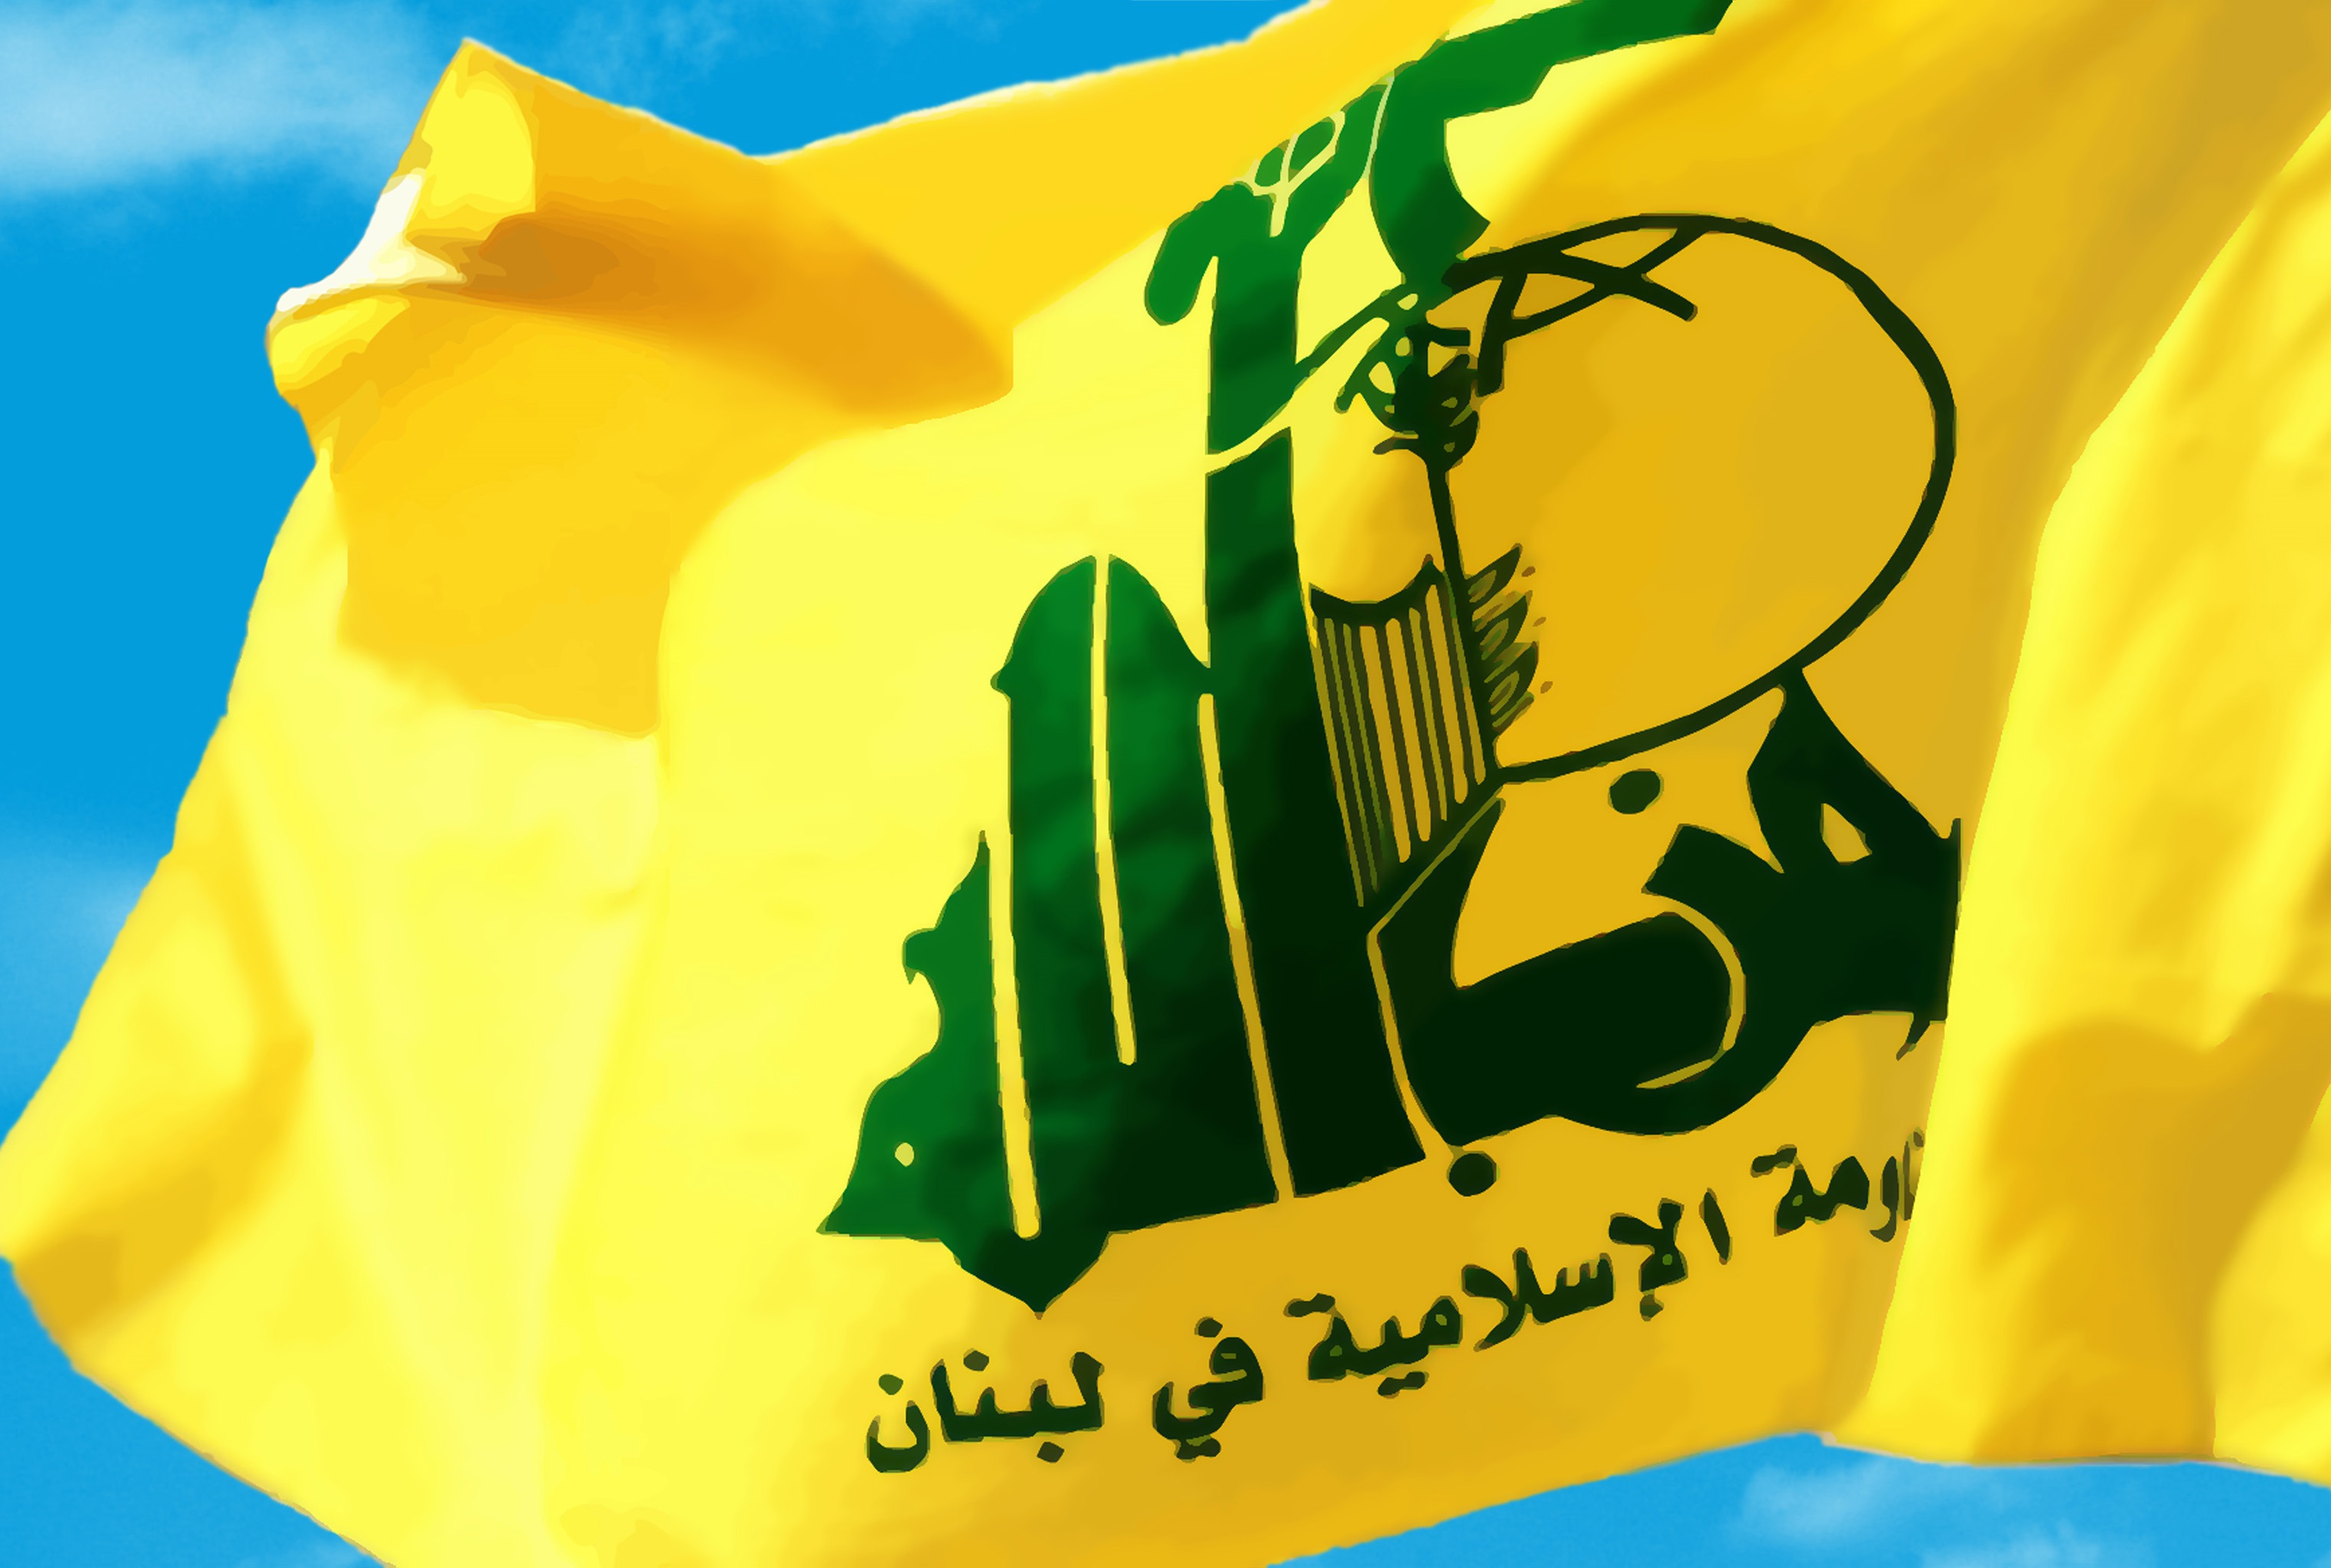 تسلیت حزب الله لبنان به مناسبت شهادت شماری از عزاداران حسینی در عراق و نیجریه